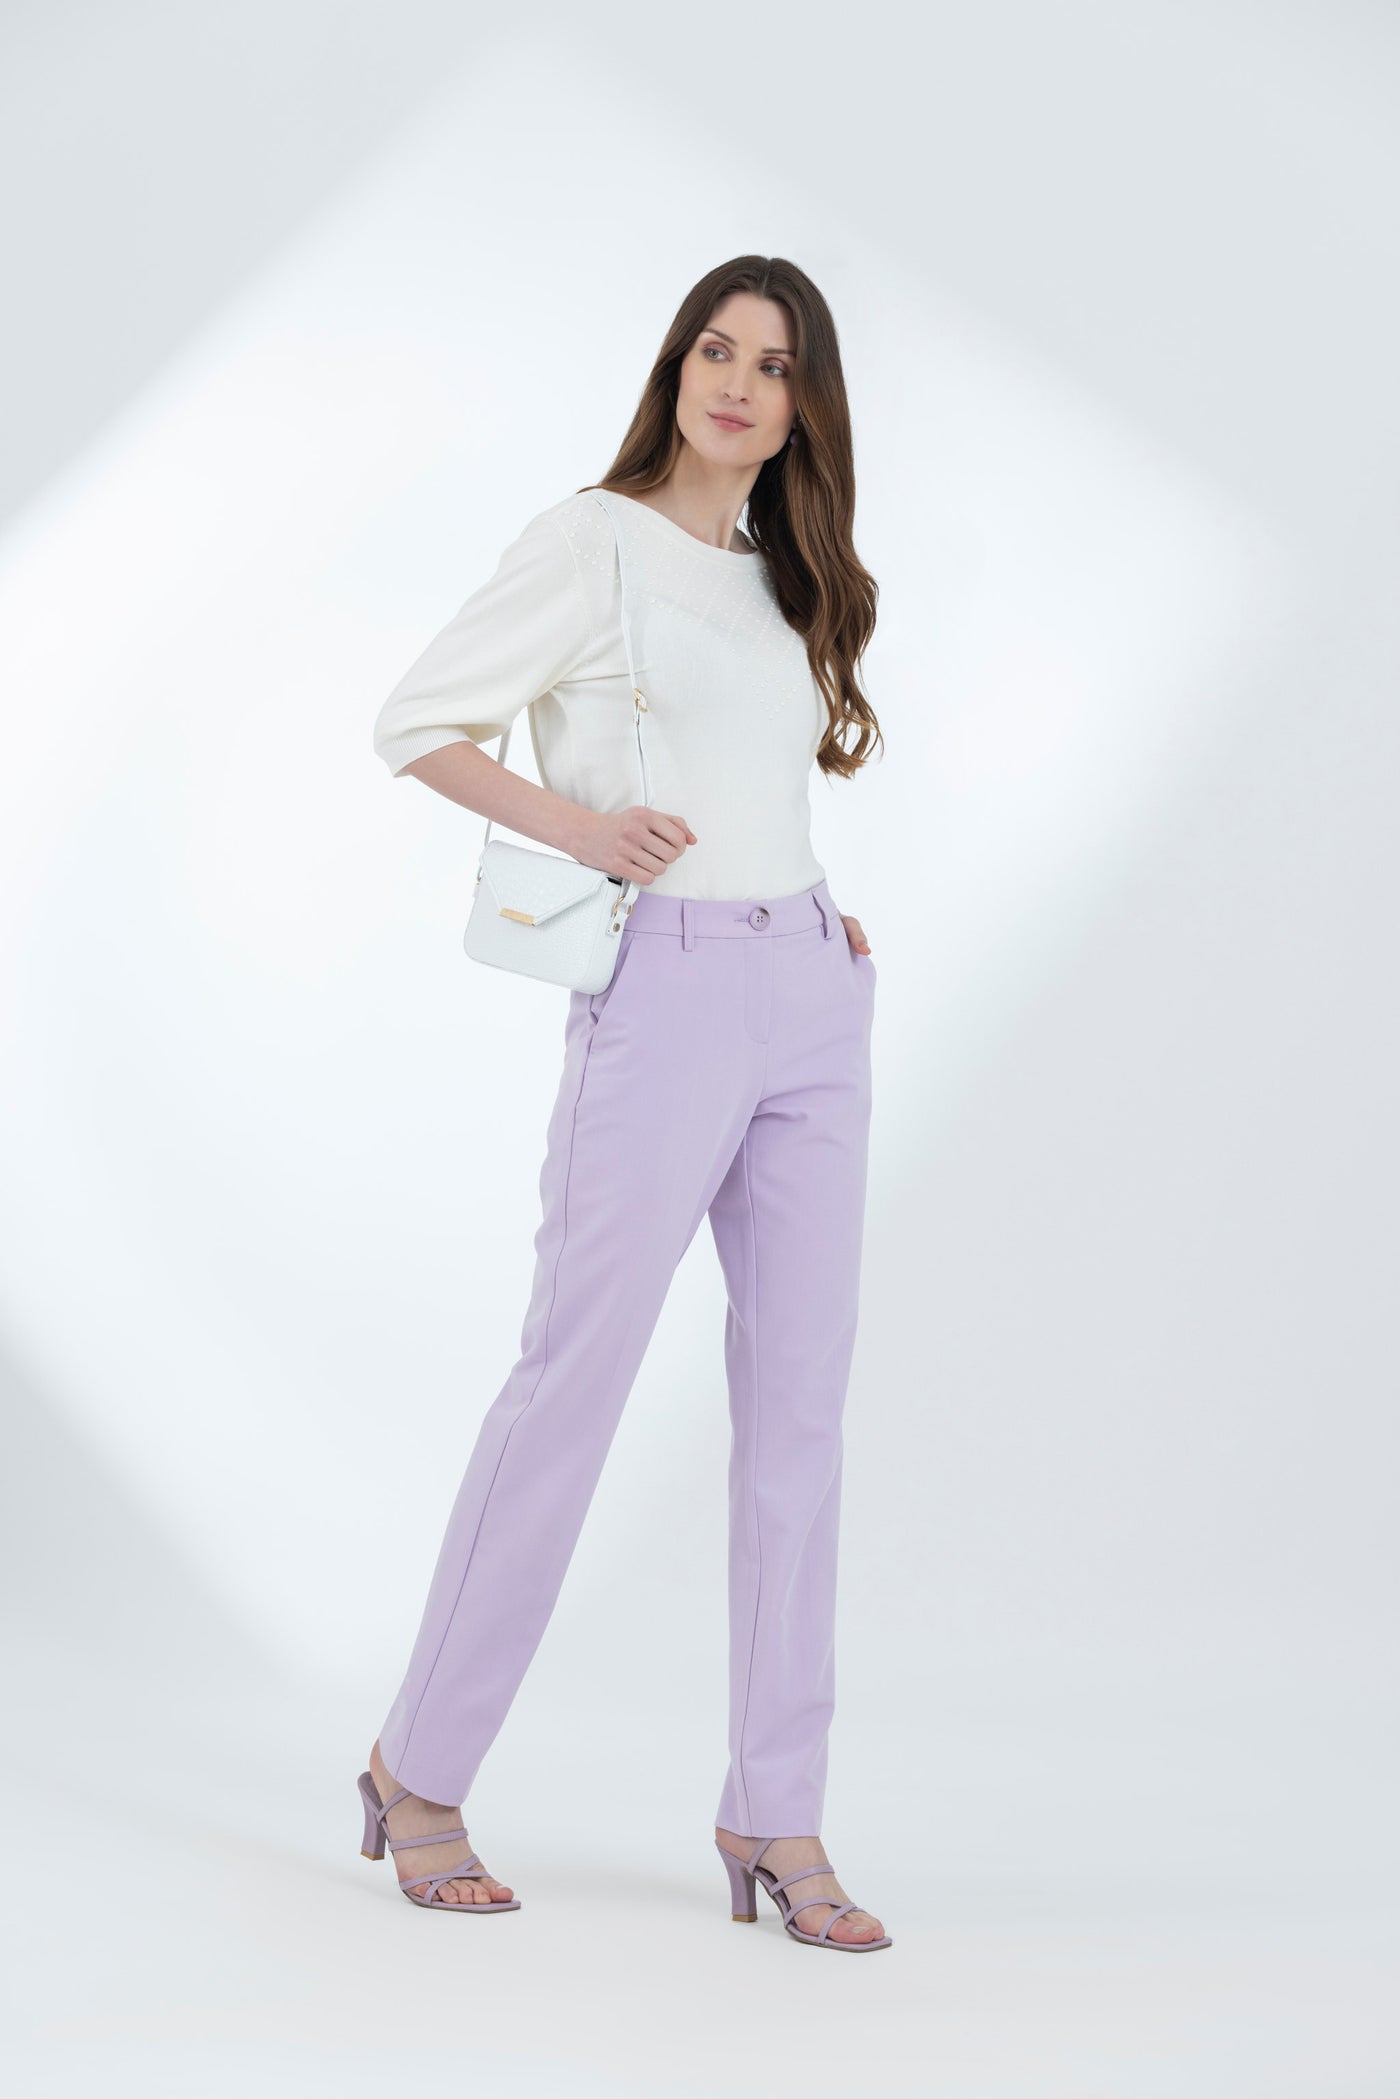 Lavender Suiting Pants